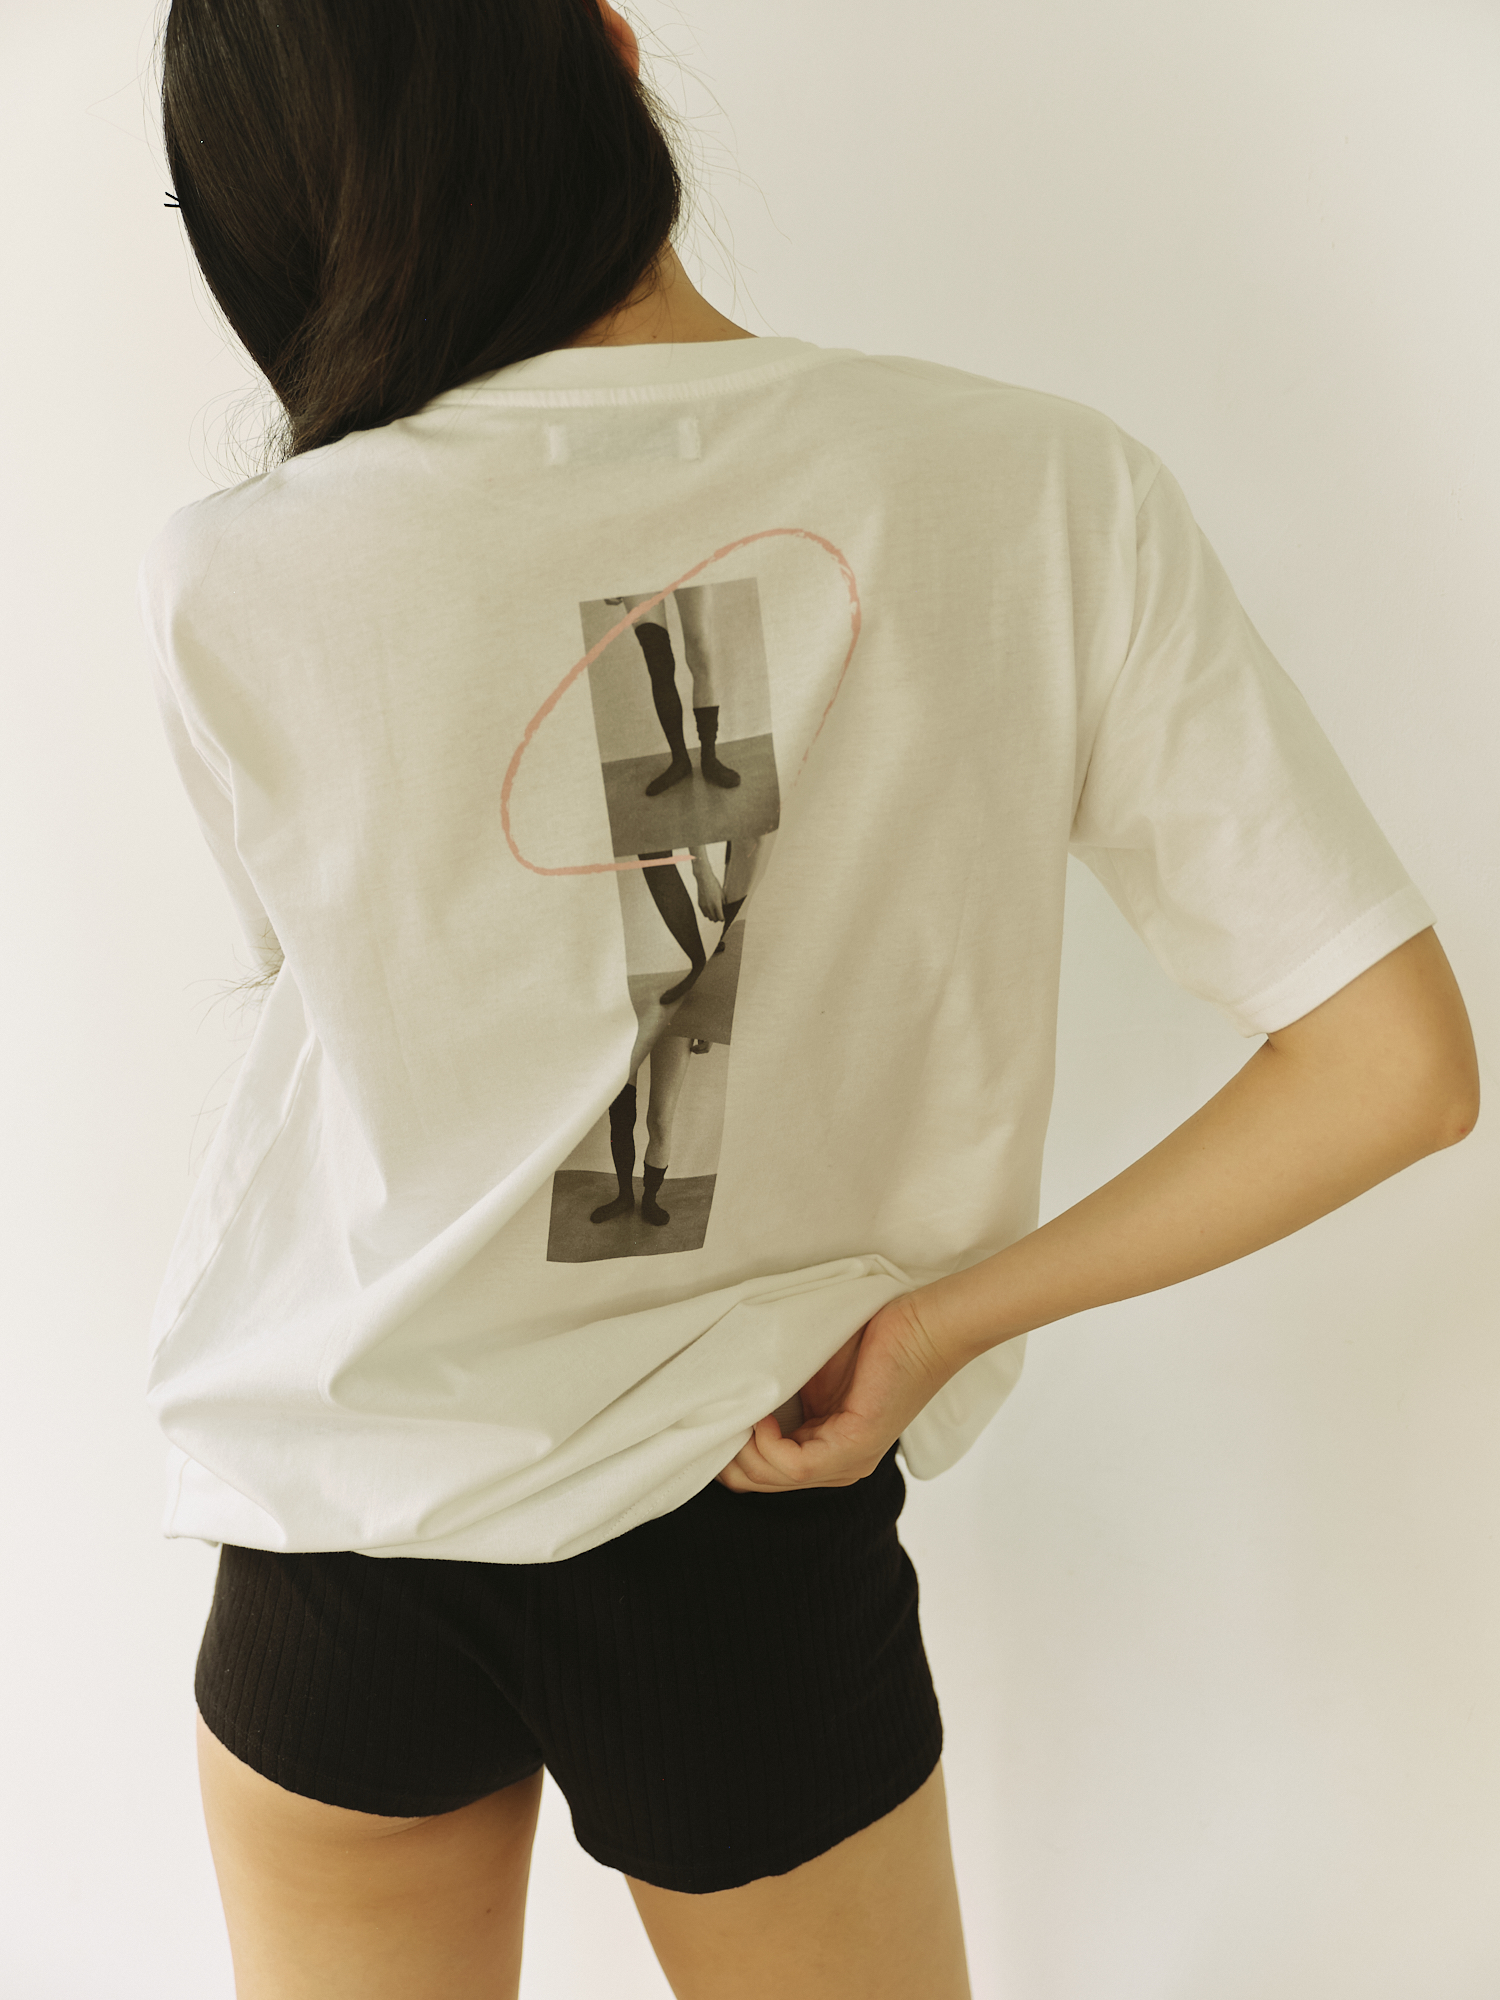 スウィートガール御用達ブランド『Rosarymoon』がブランド10周年記念オリジナルTシャツを数量限定で販売♡